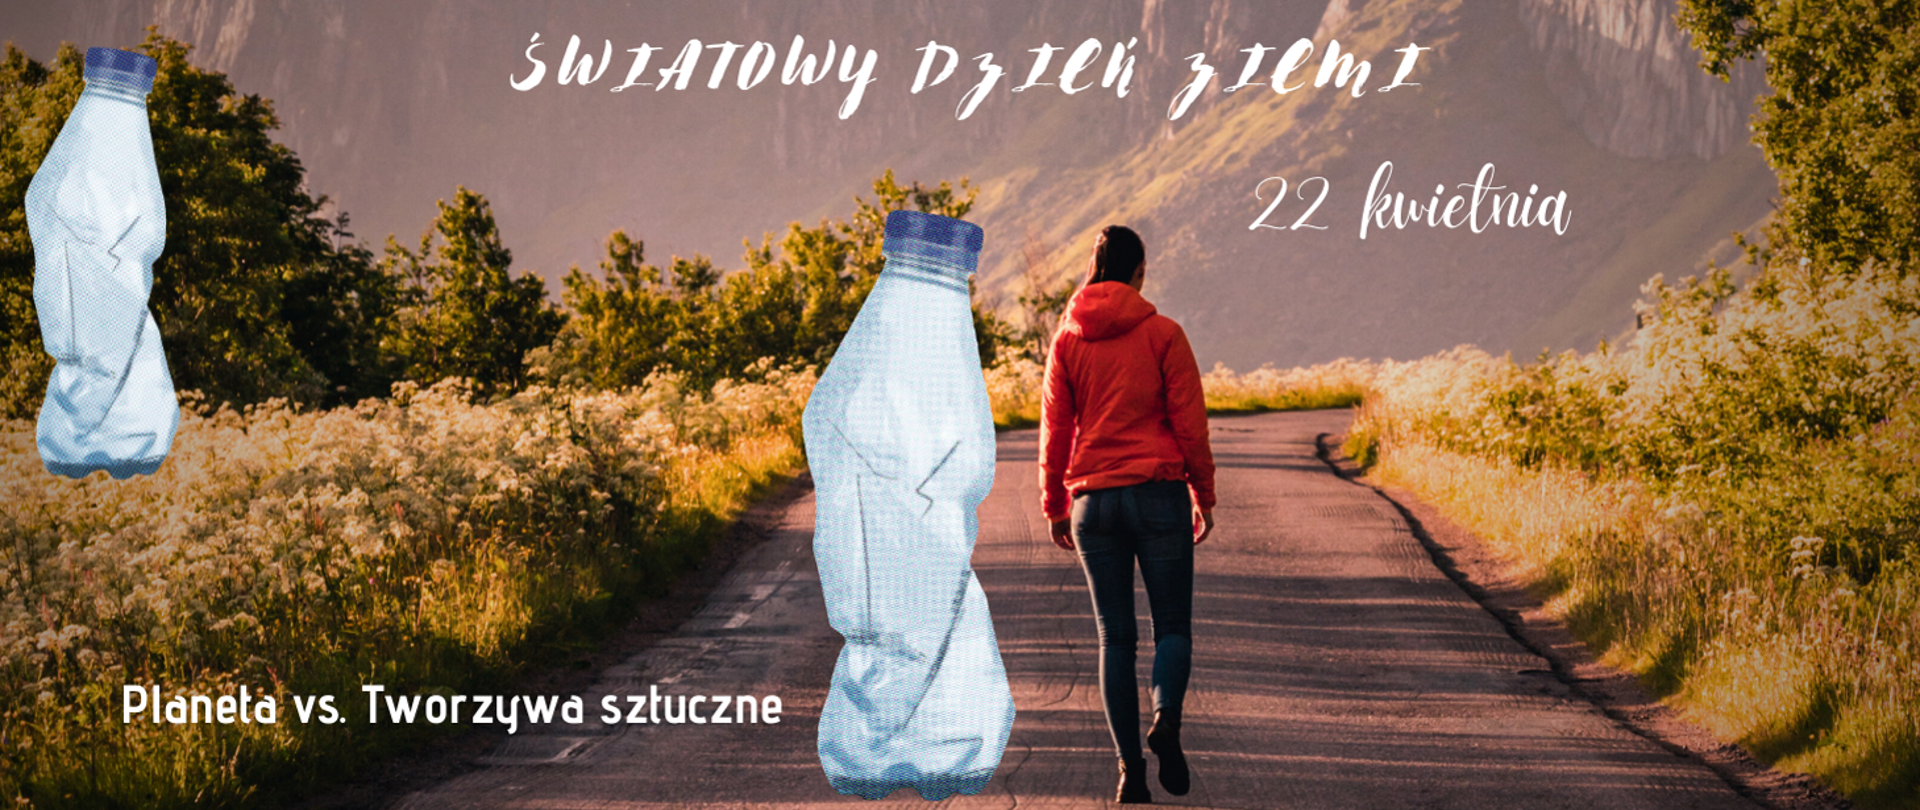 Kobieta idzie drogą, a obok niej jest ogromna plastikowa butelka